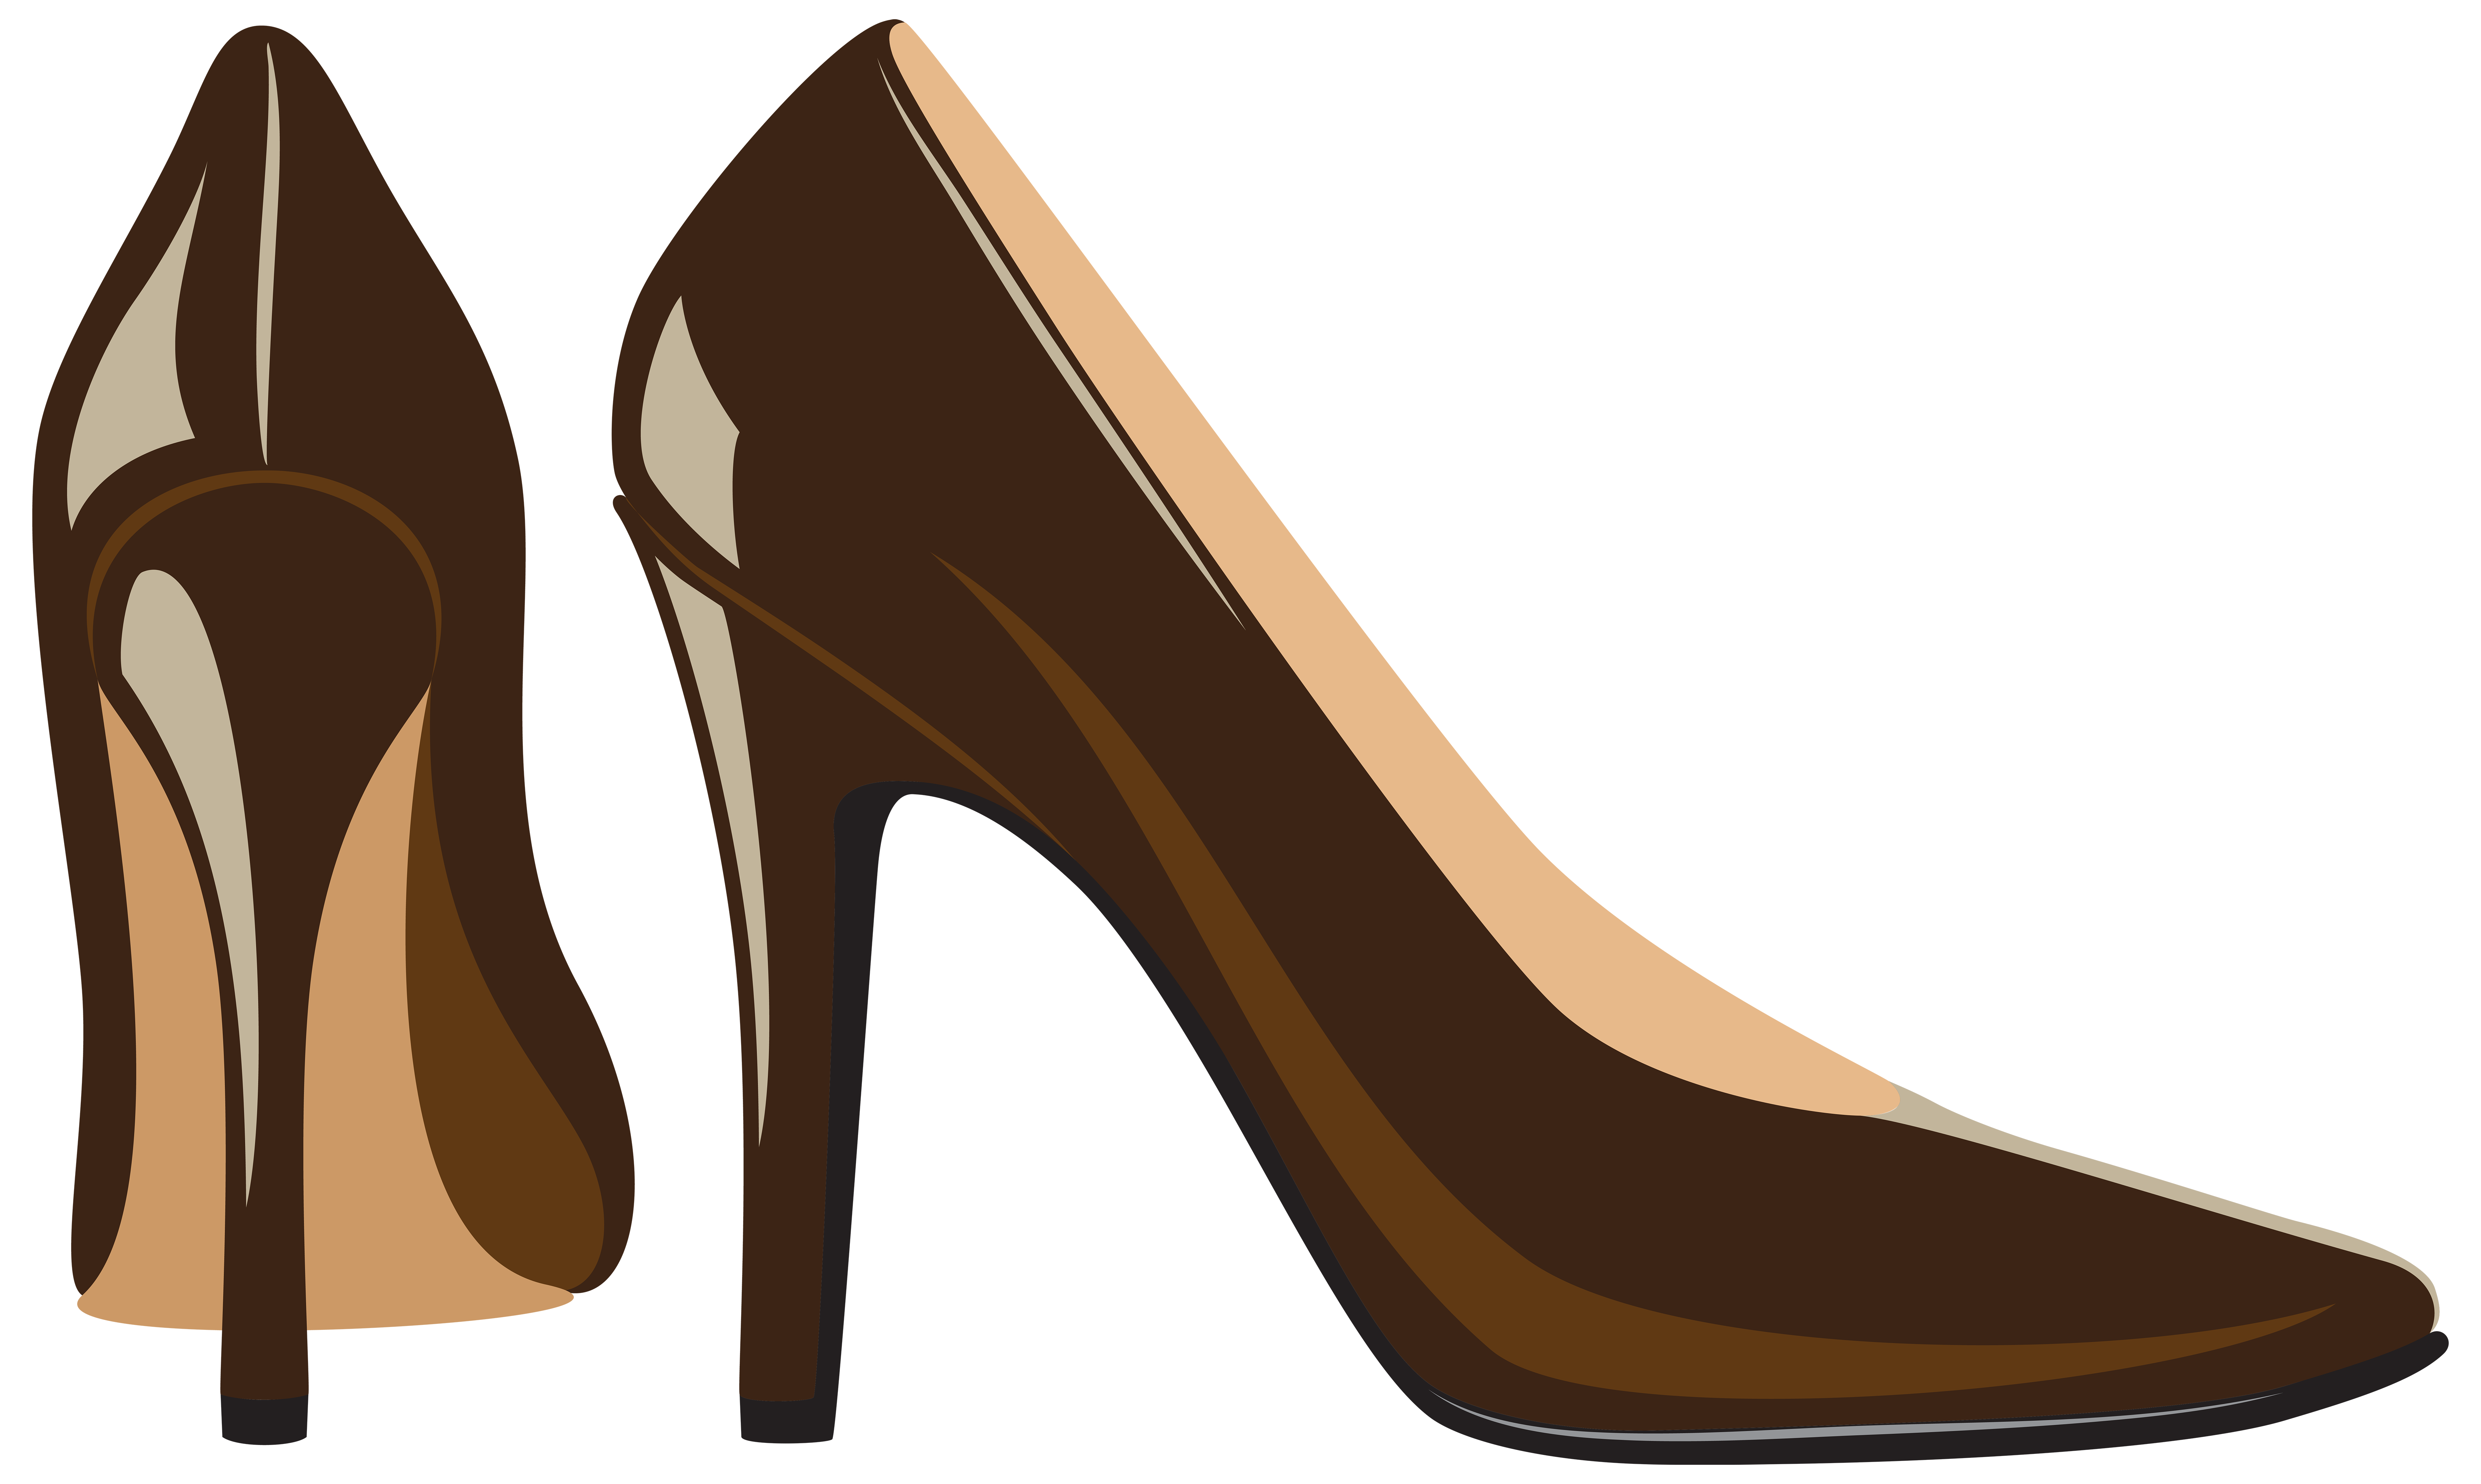 brown pumps shoes clip art